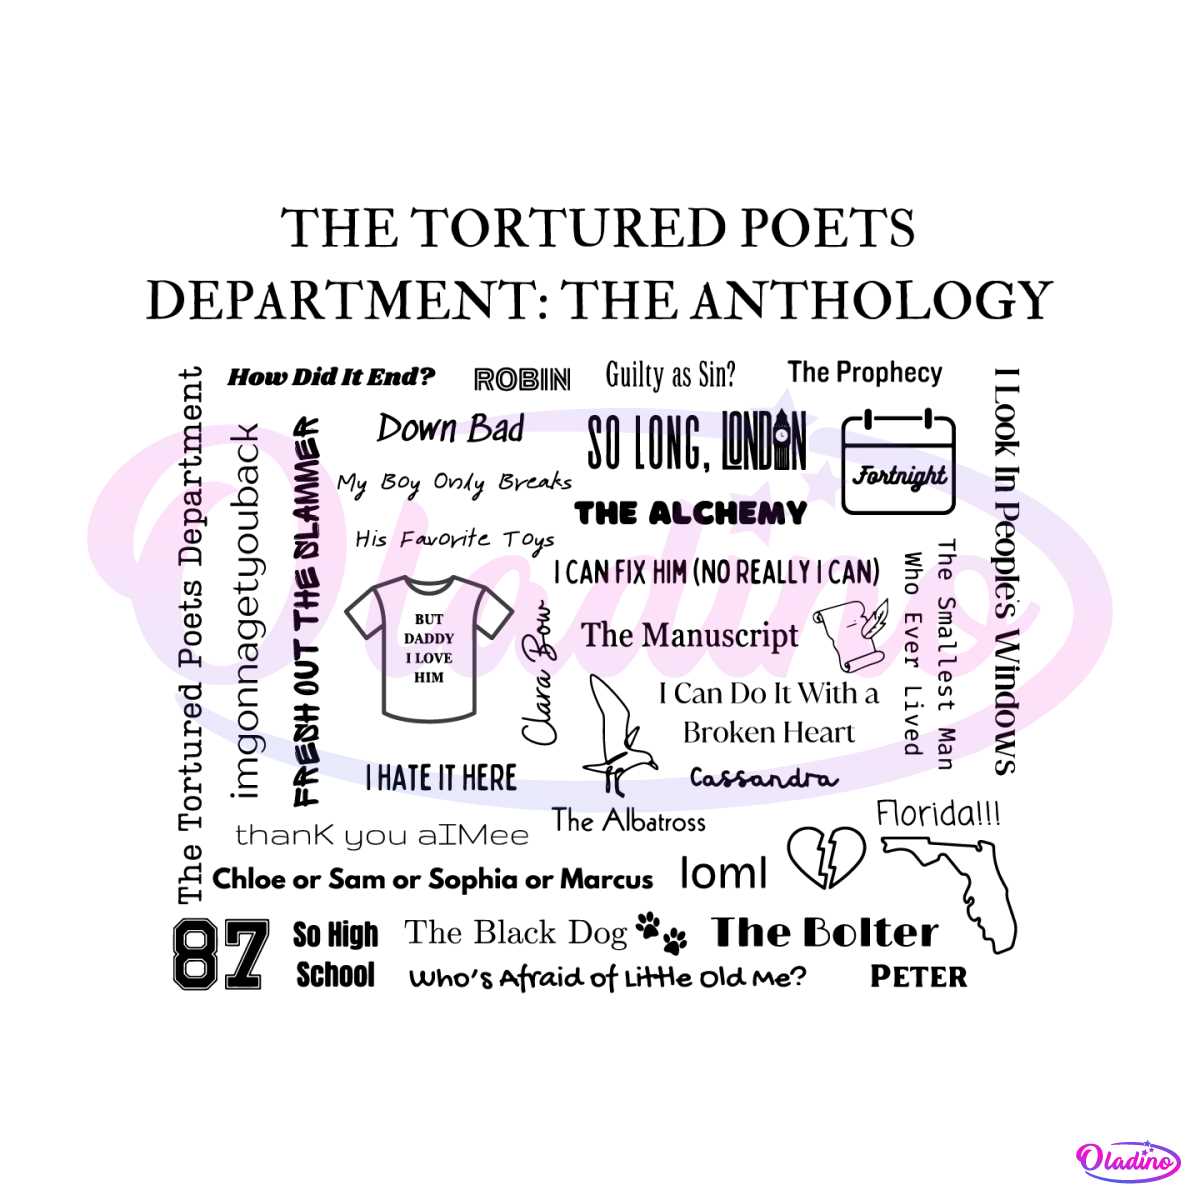 The Tortured Poets Department Tracklist SVG